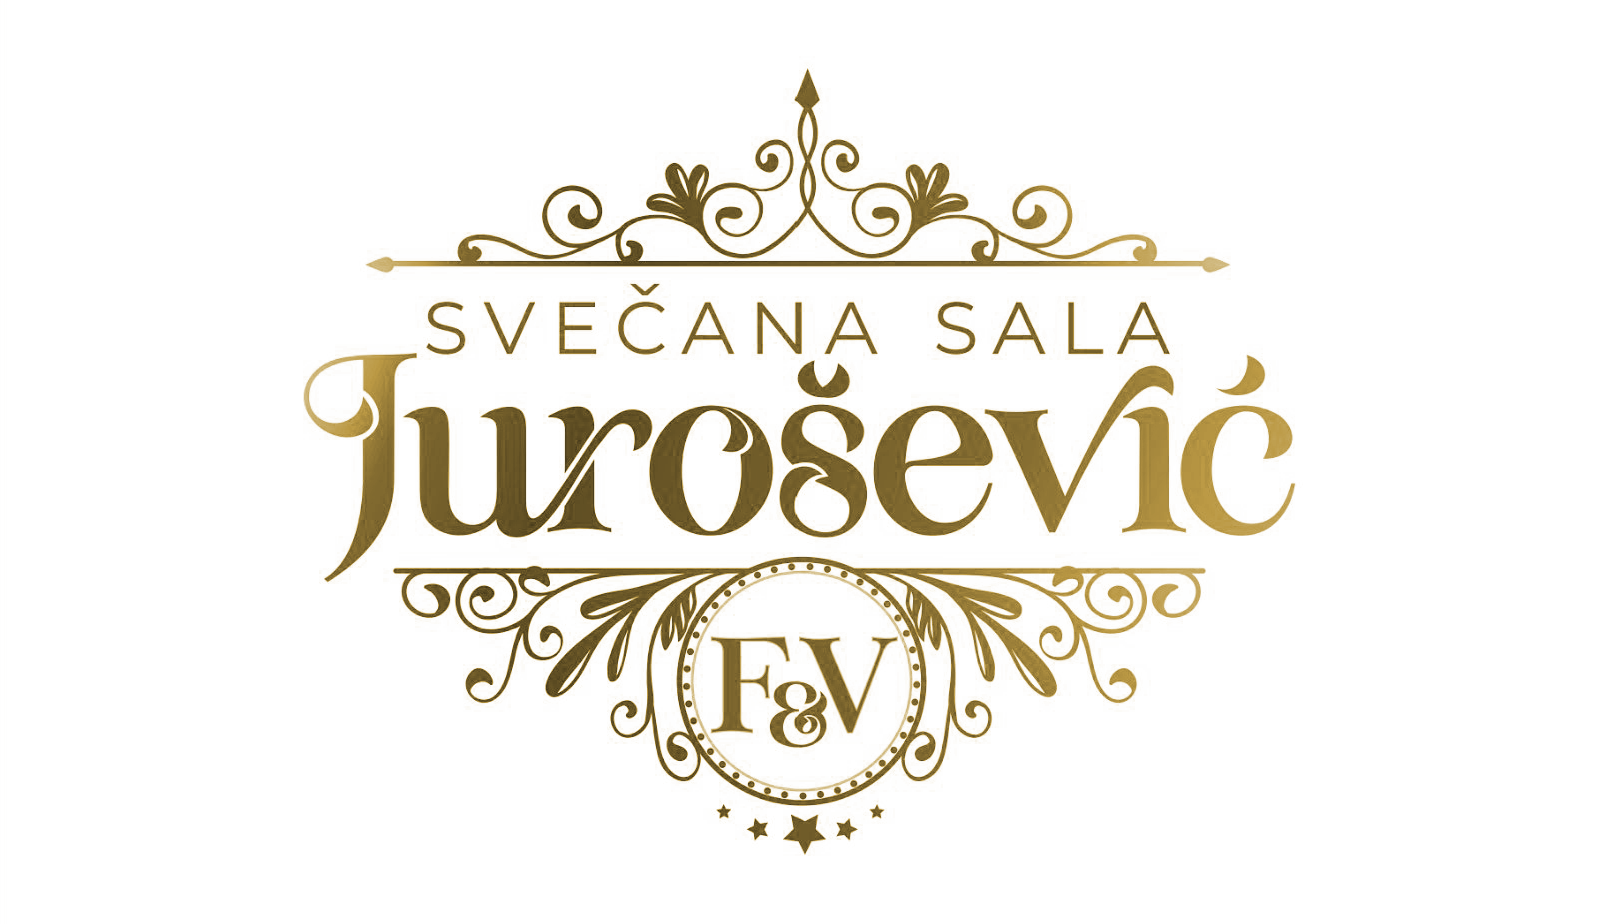 Jurošević F&V